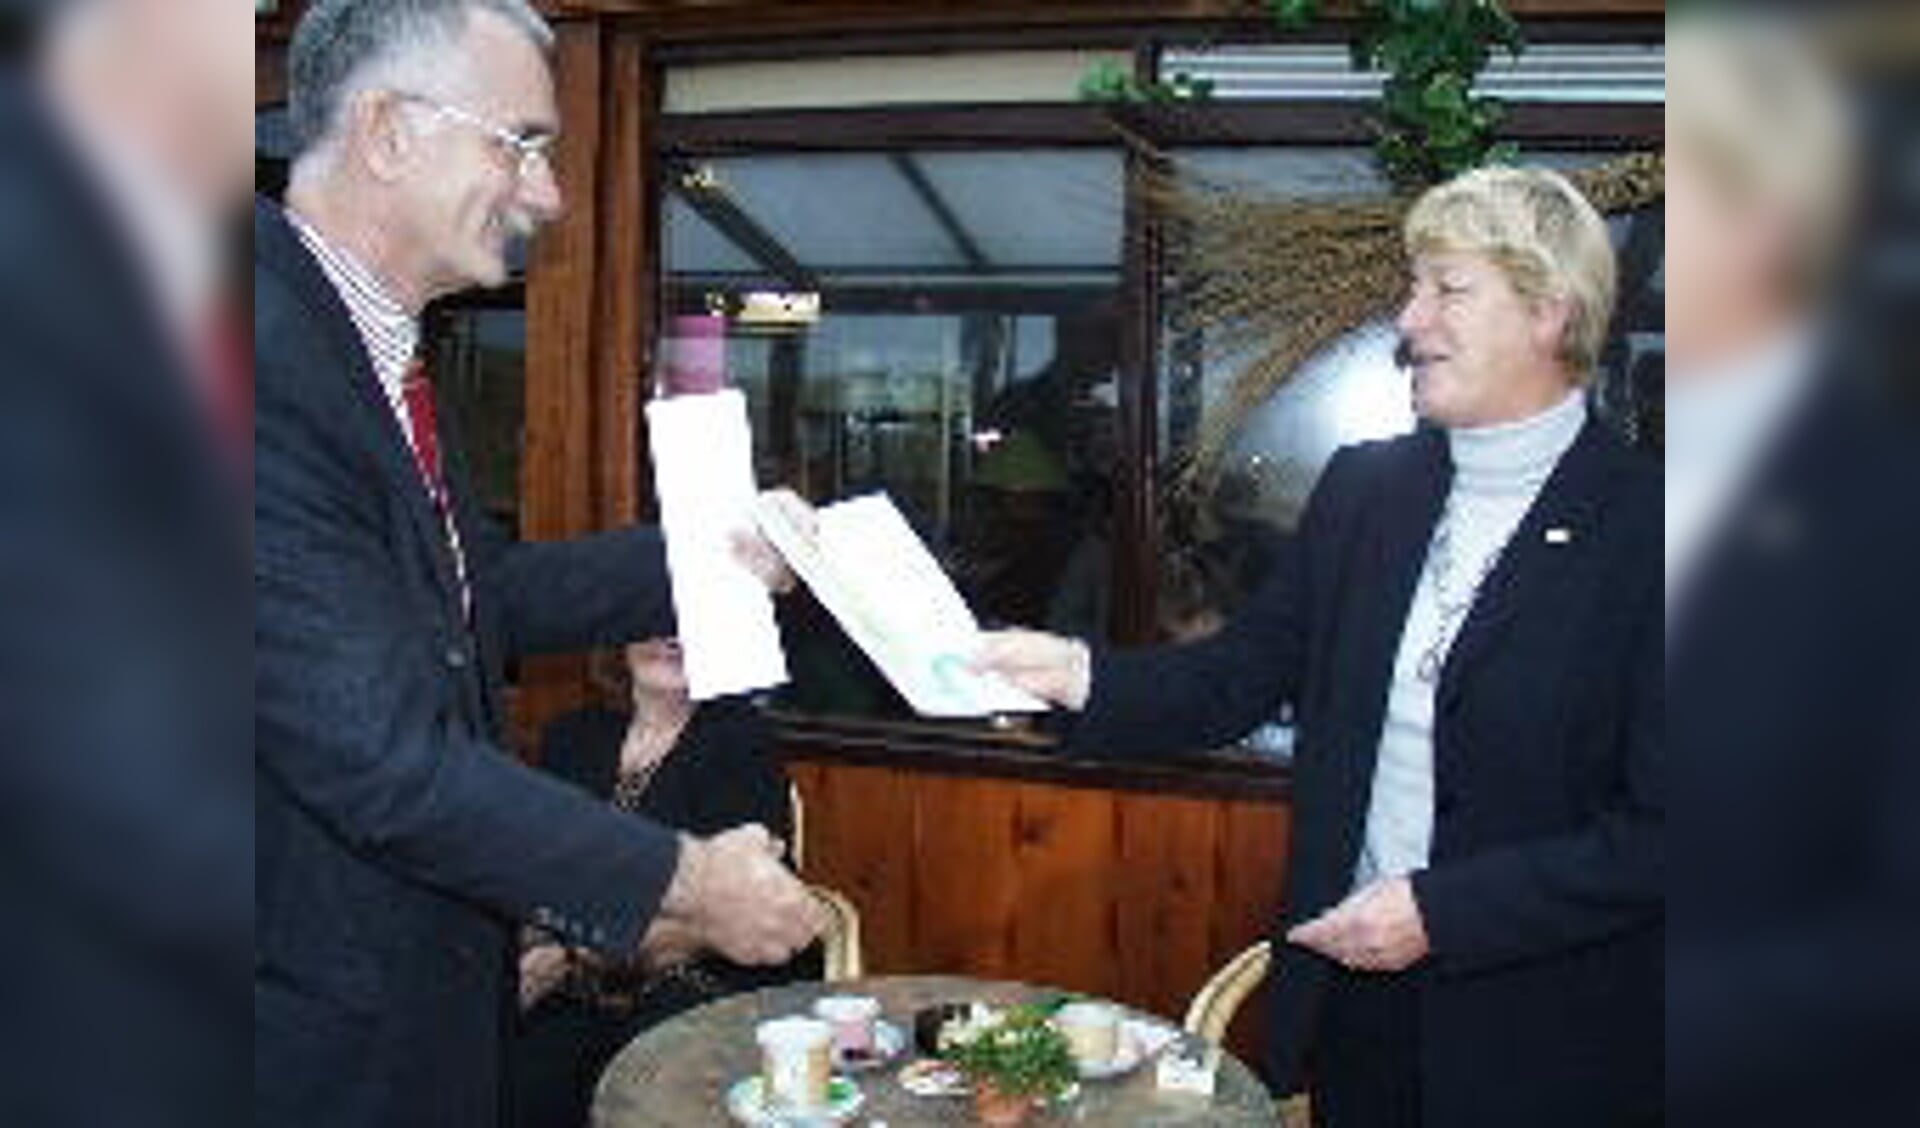 Frans Jansen van Toerisme Recreatie Nederland, die de opdracht gaf, overhandigt Geldorp het eerste exemplaar.